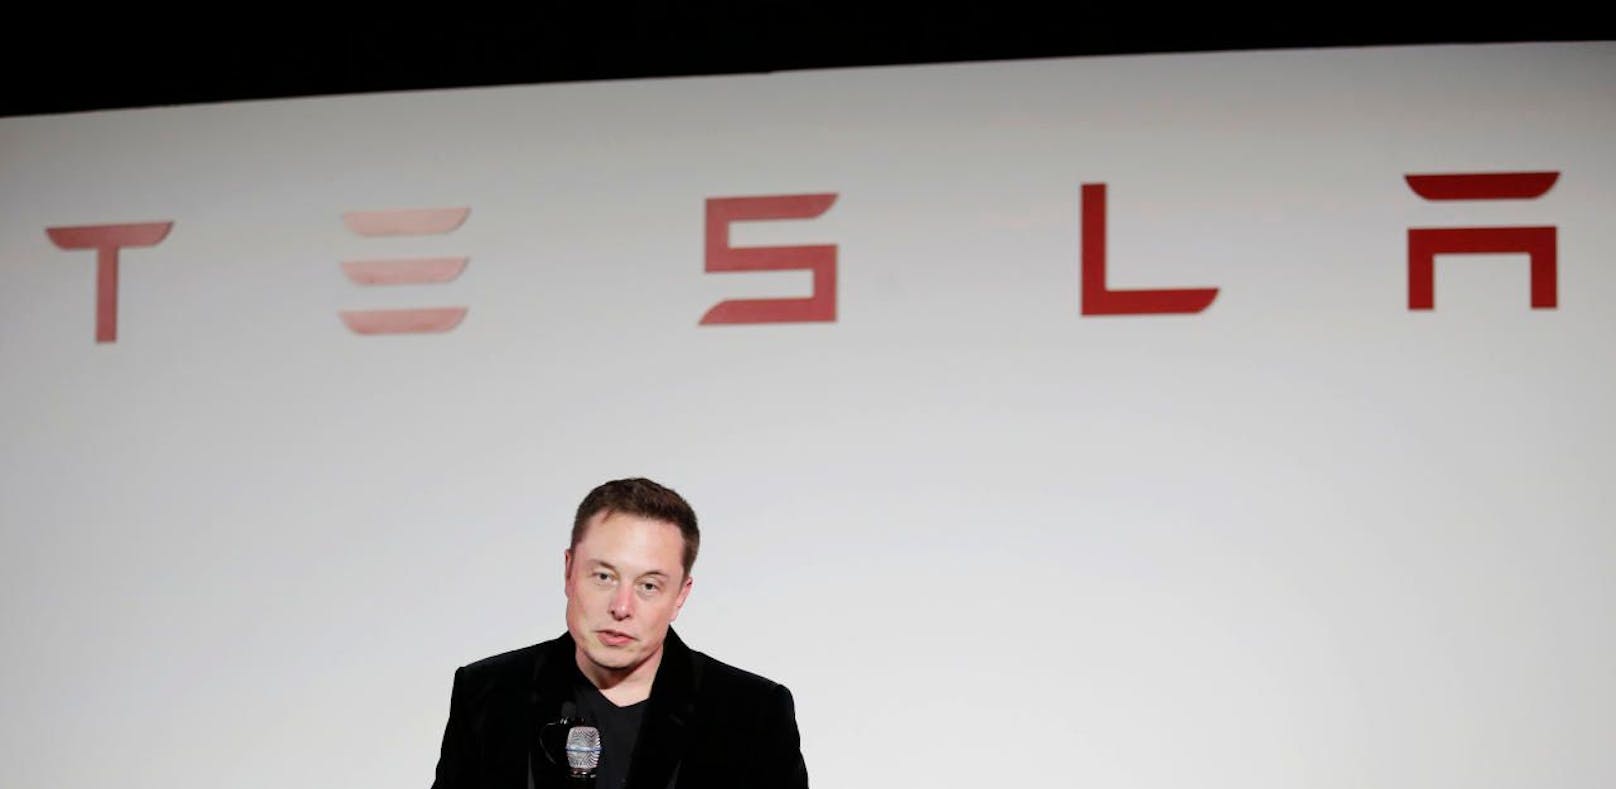 
Hat mit der US-Börsenaufsicht SEC eine Vereinbarung getroffen: Tesla-Chef Elon Musk.